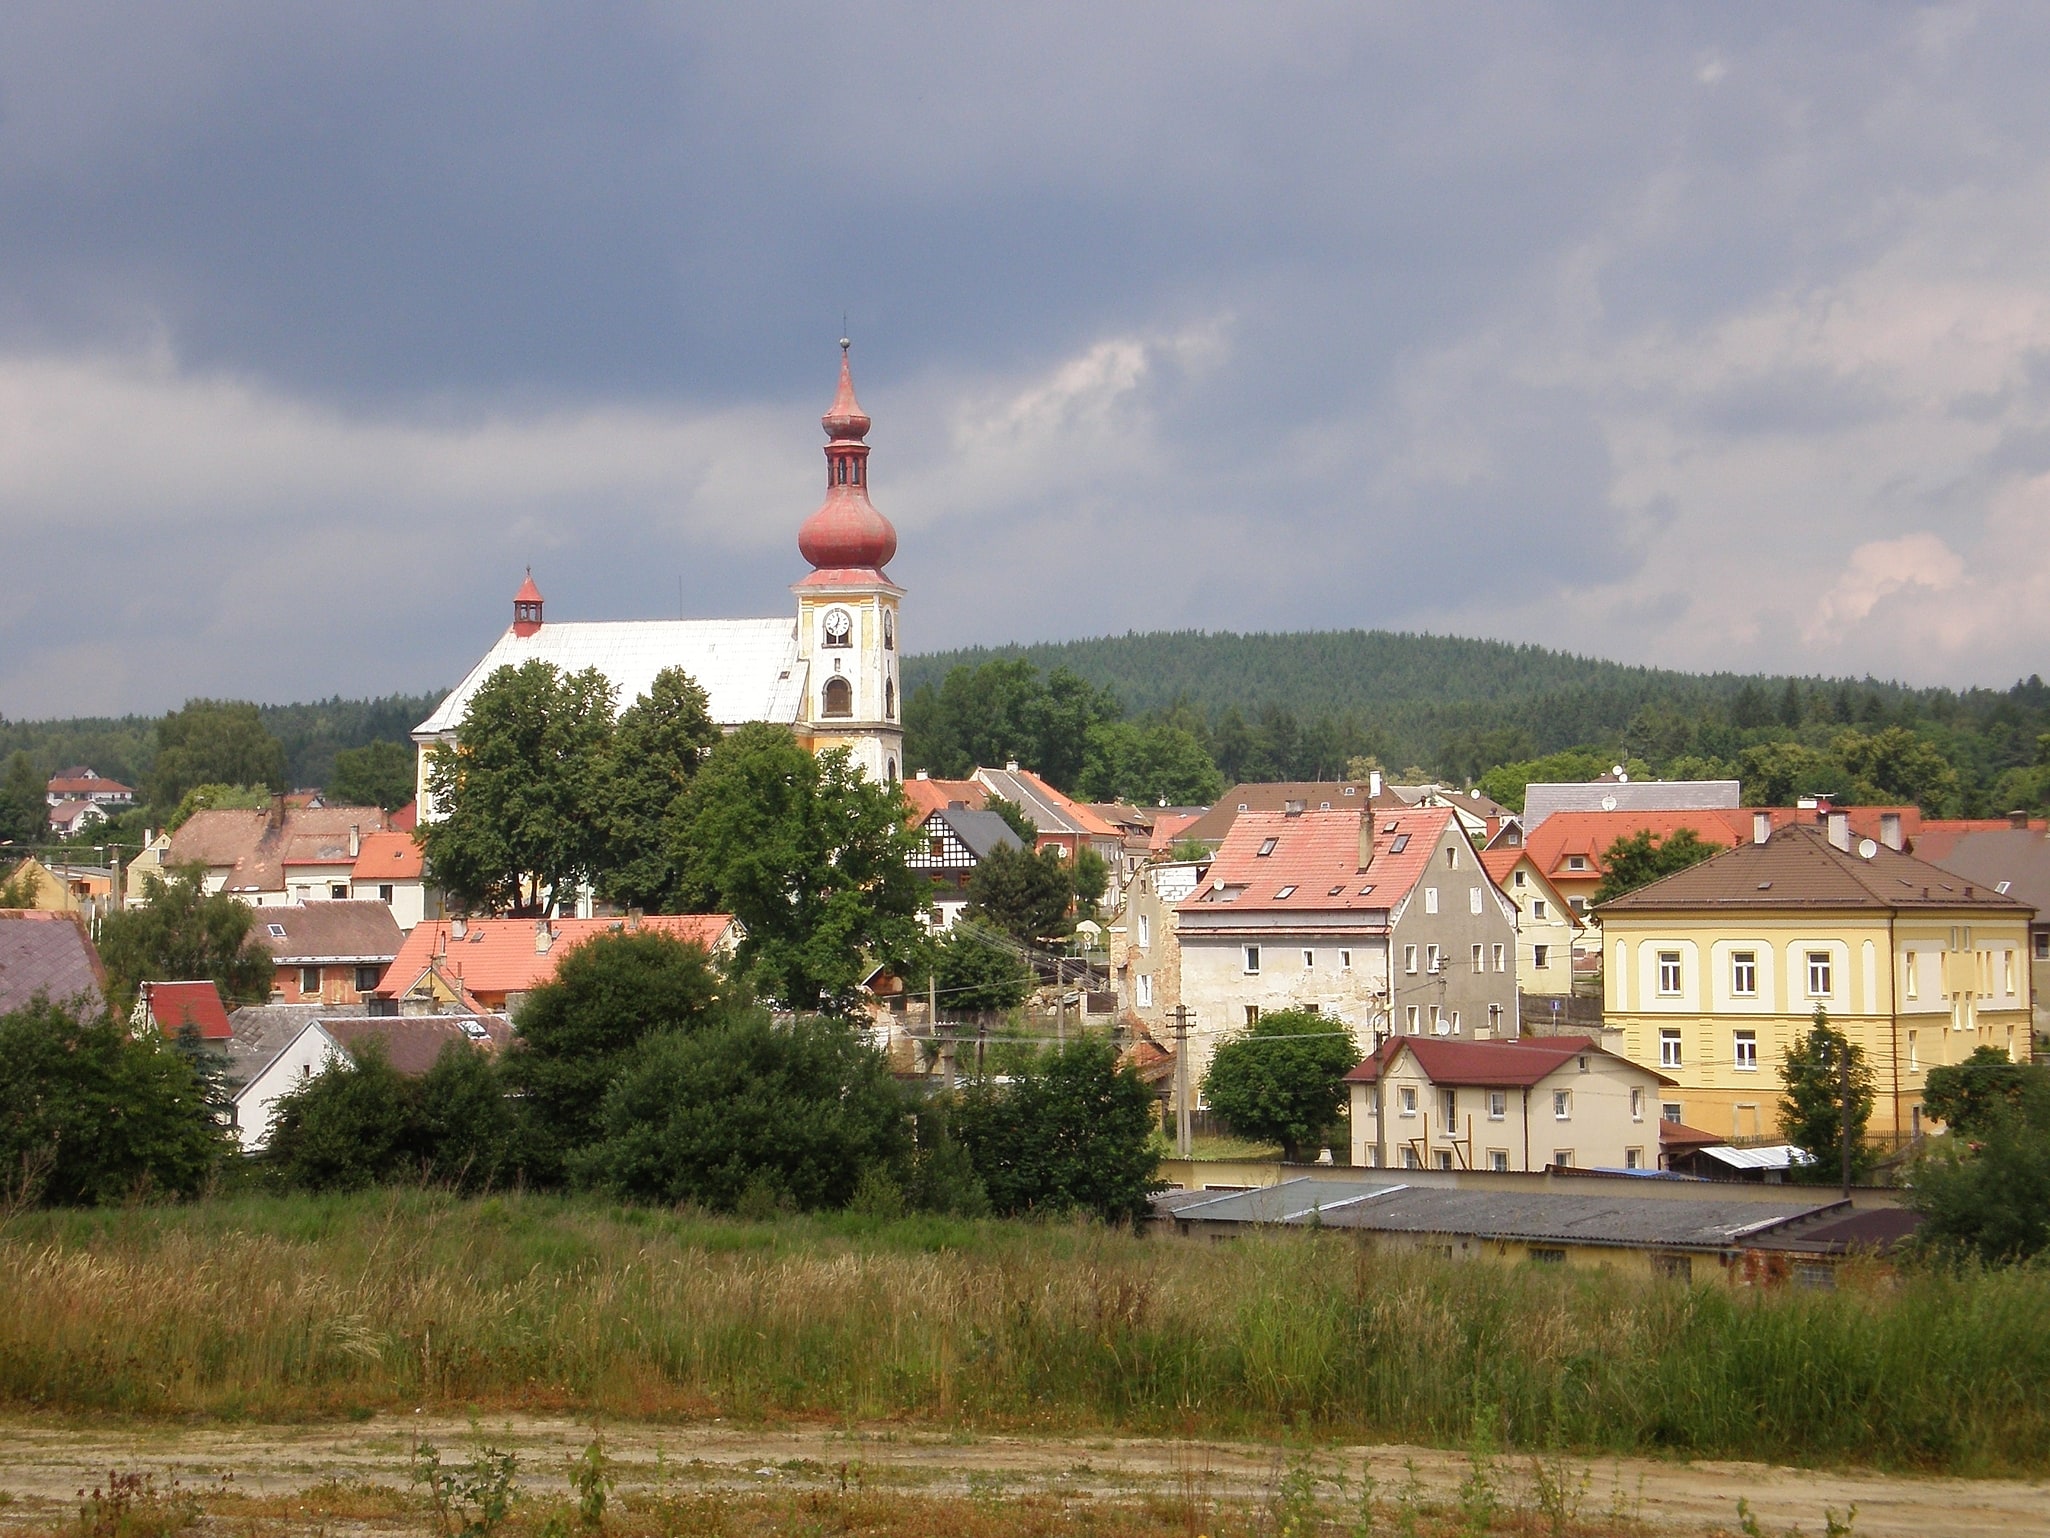 Skalná, Czech Republic